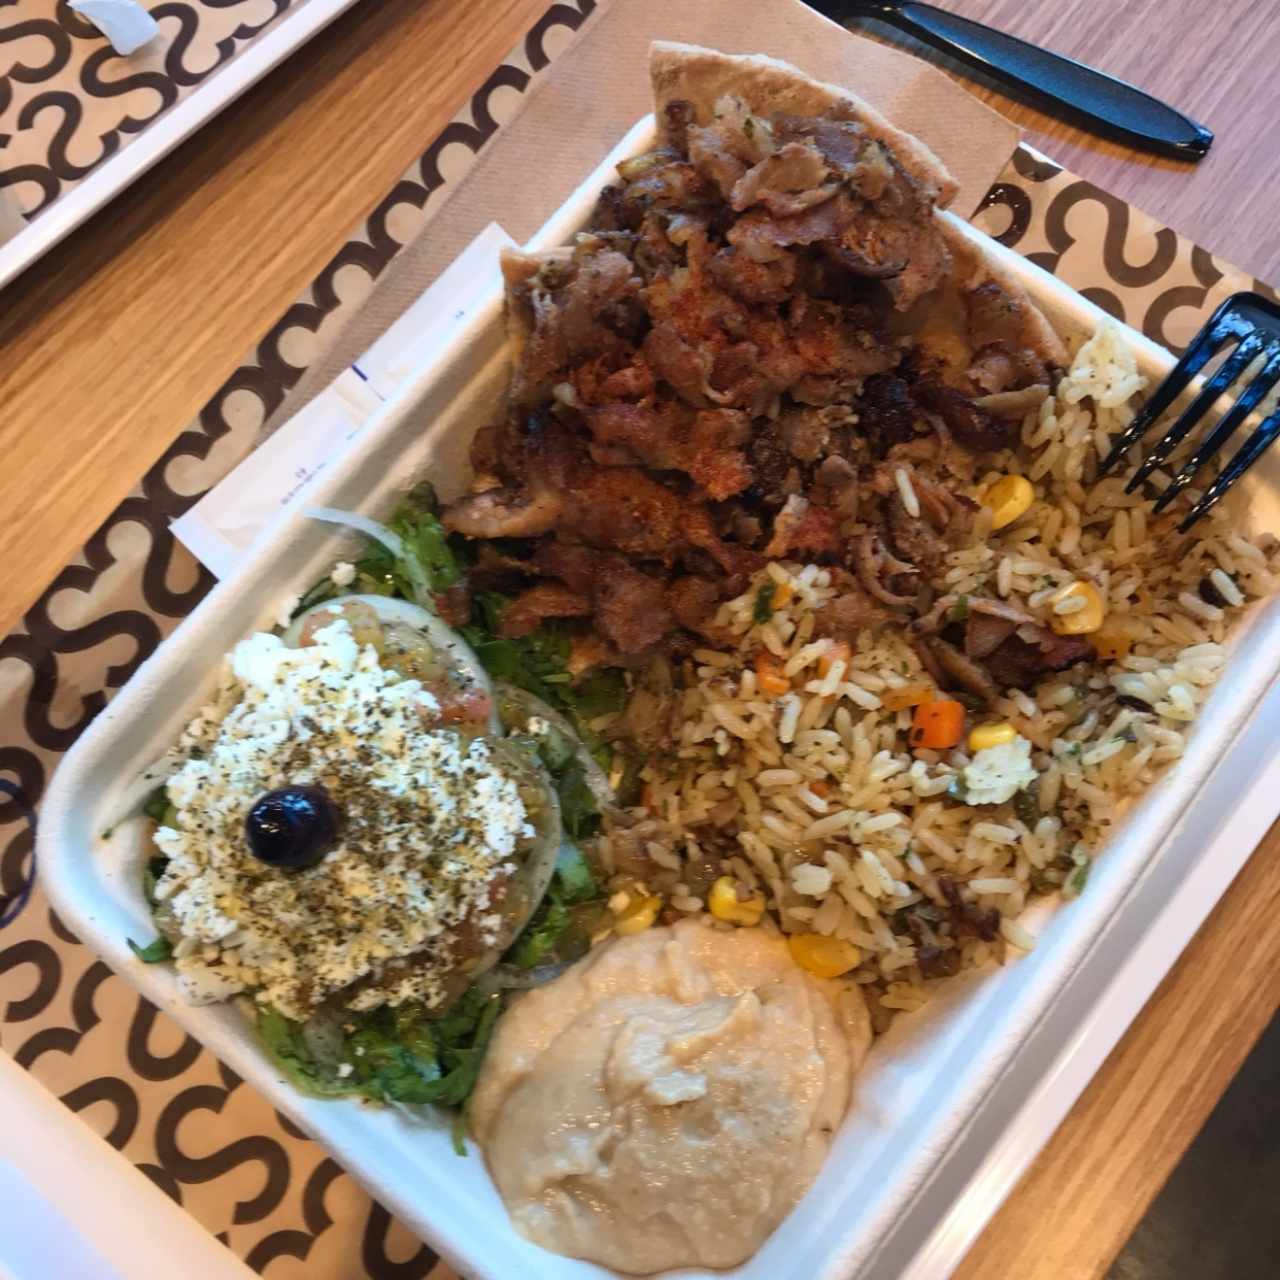 pork Platter con ensalada griega, arroz y Hummus